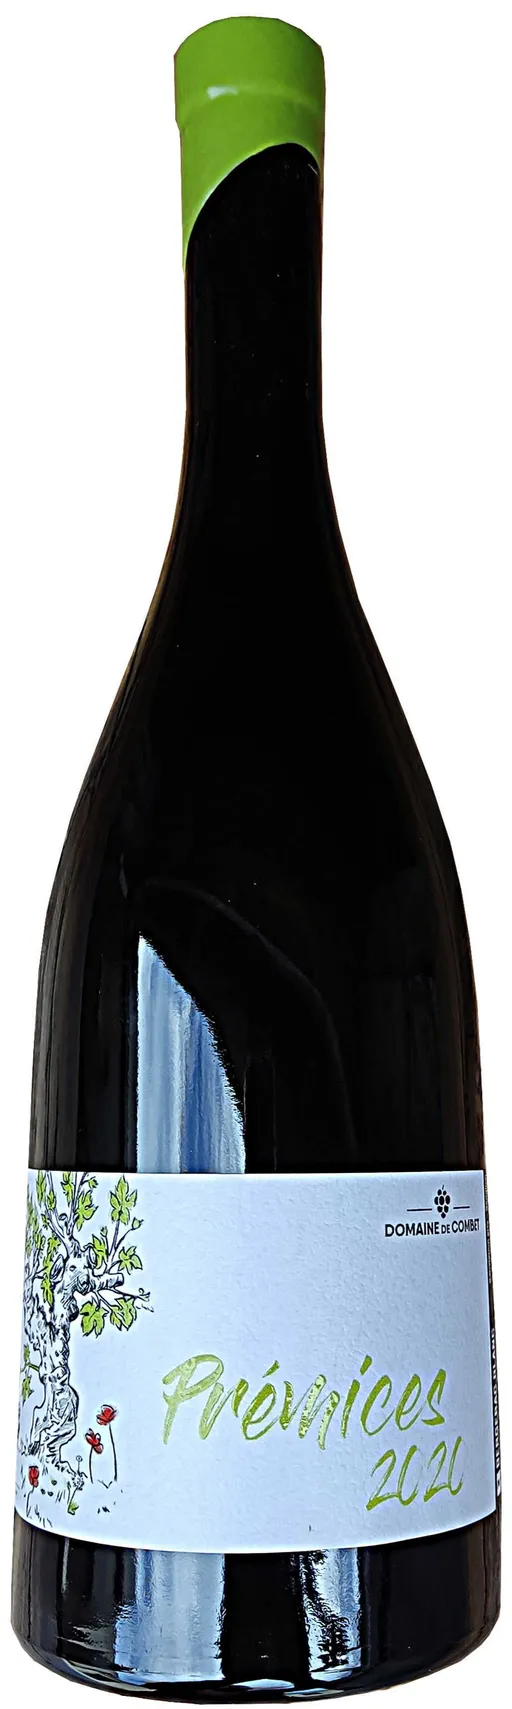 Earl de Combet PREMICES, Bianco, 2021, Bergerac. Bottle image